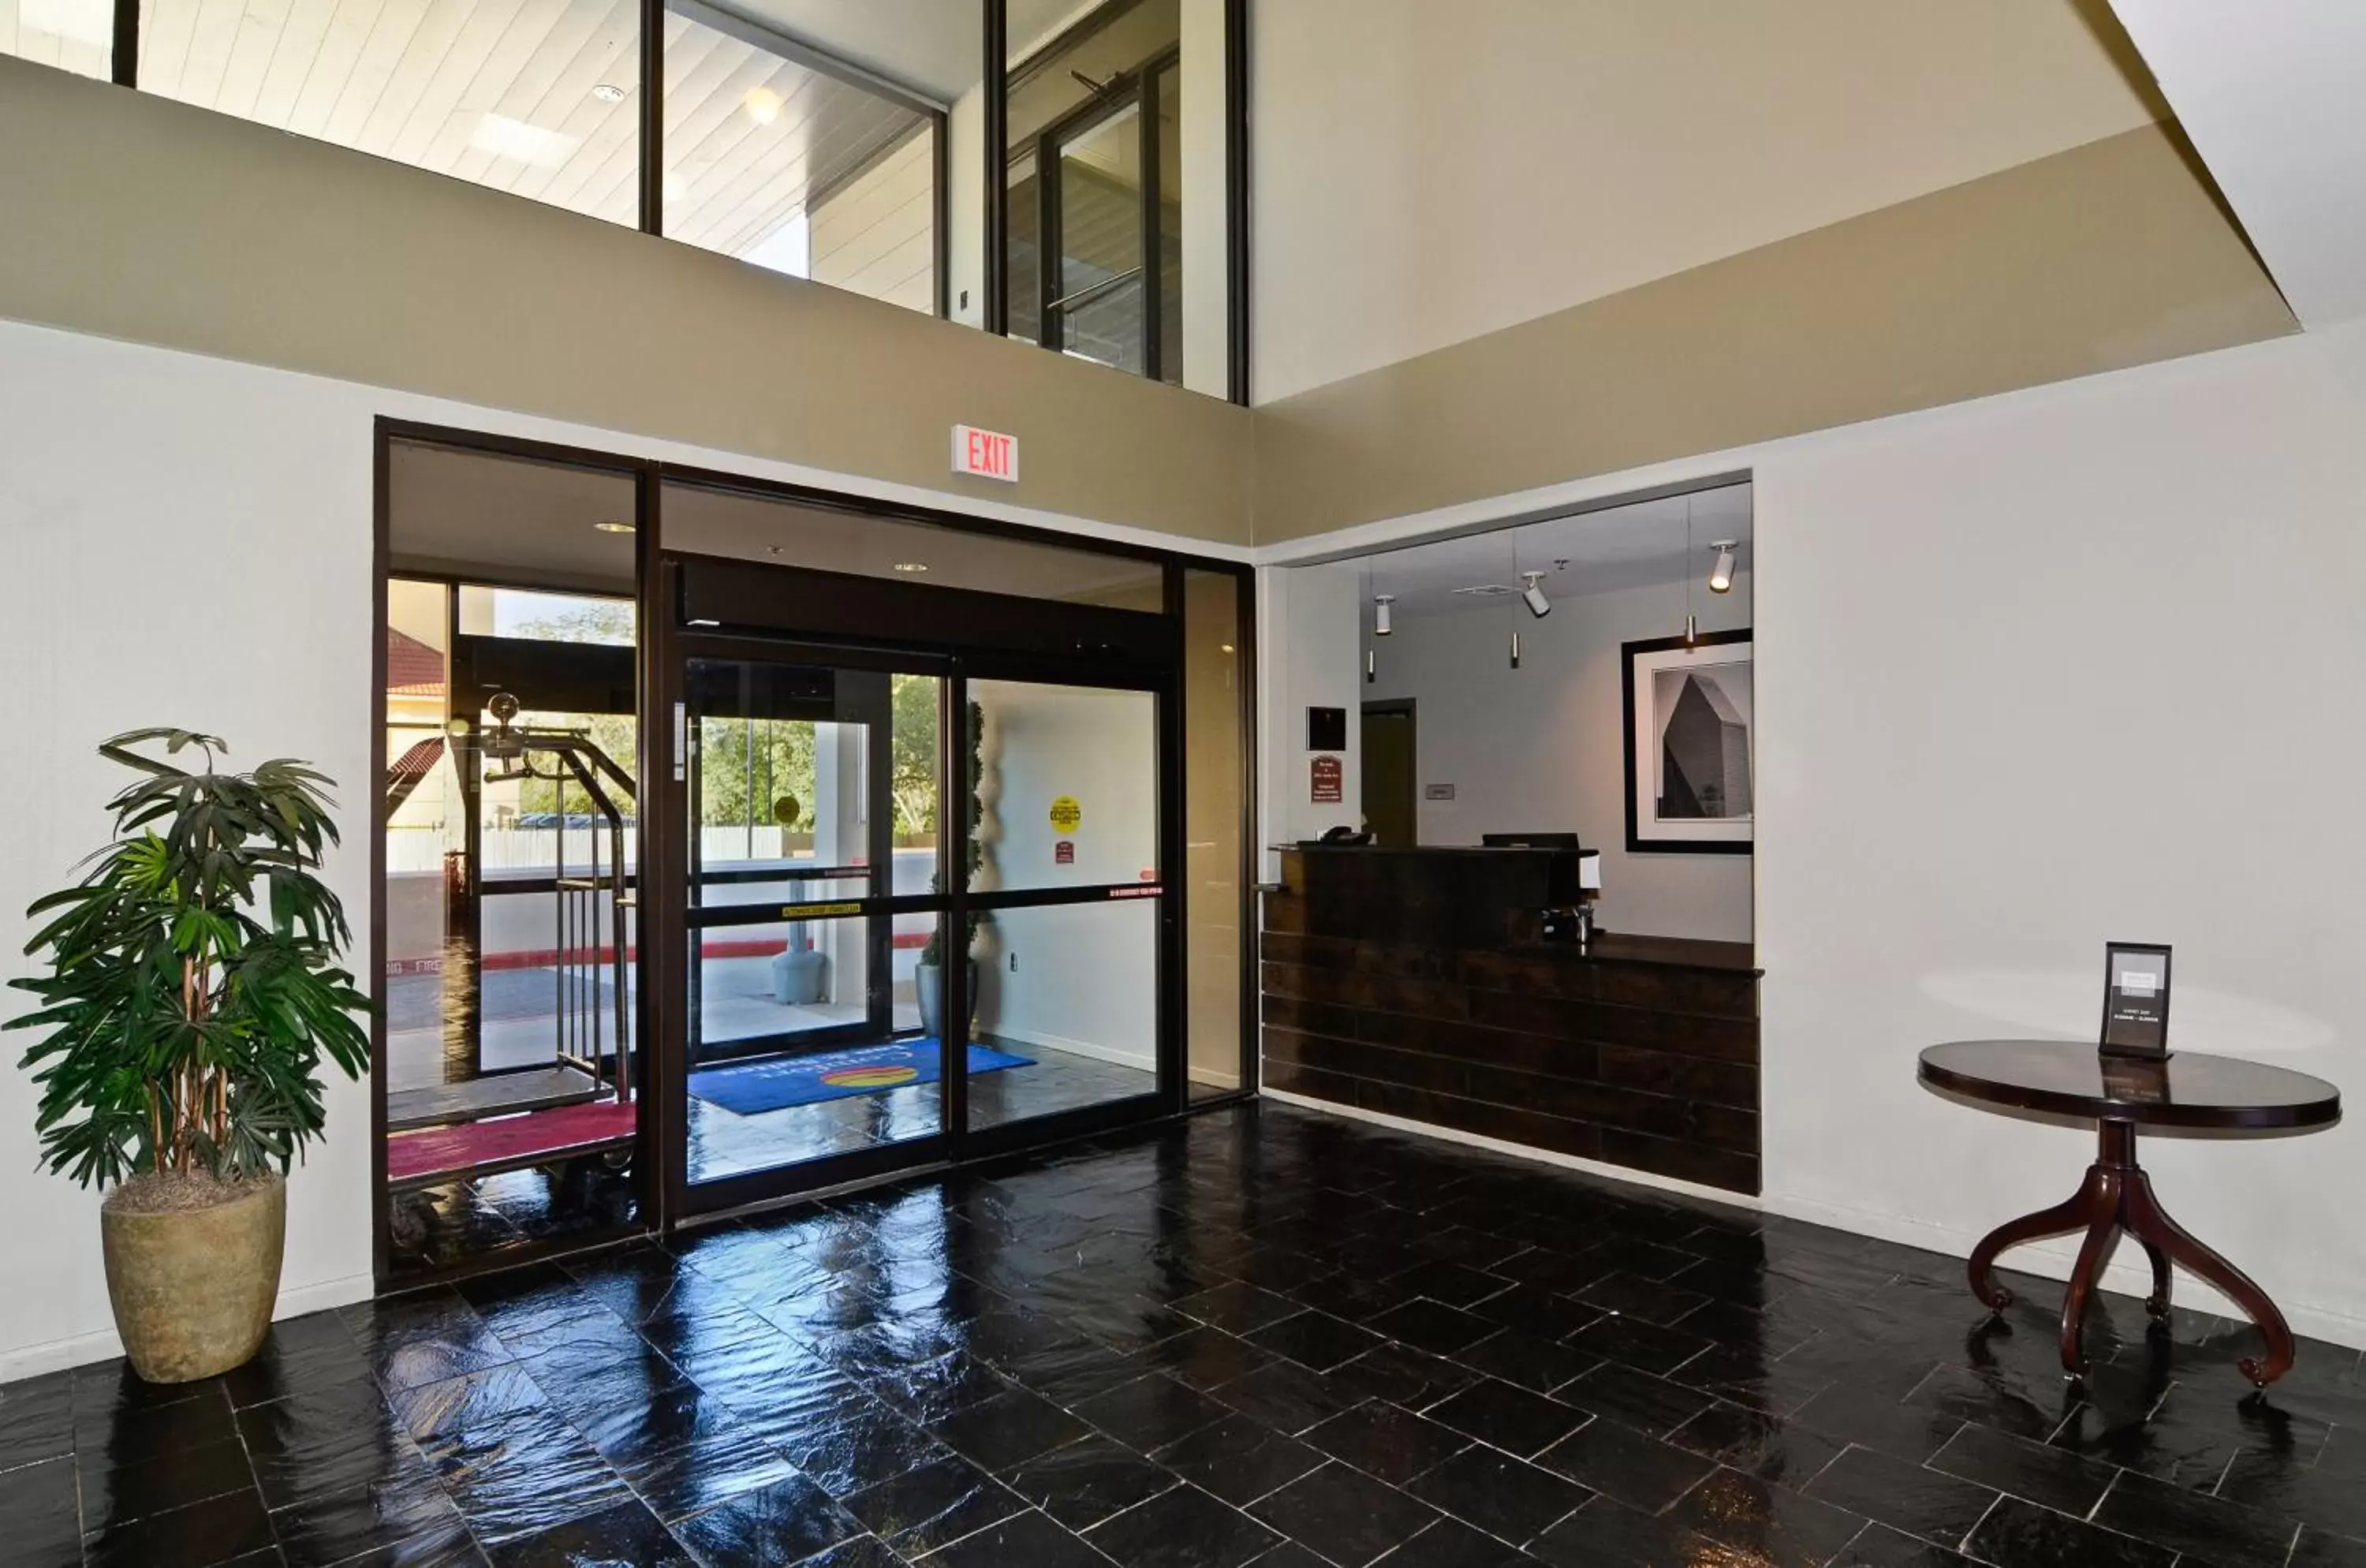 Lobby or reception, Lobby/Reception in Baymont by Wyndham Columbus